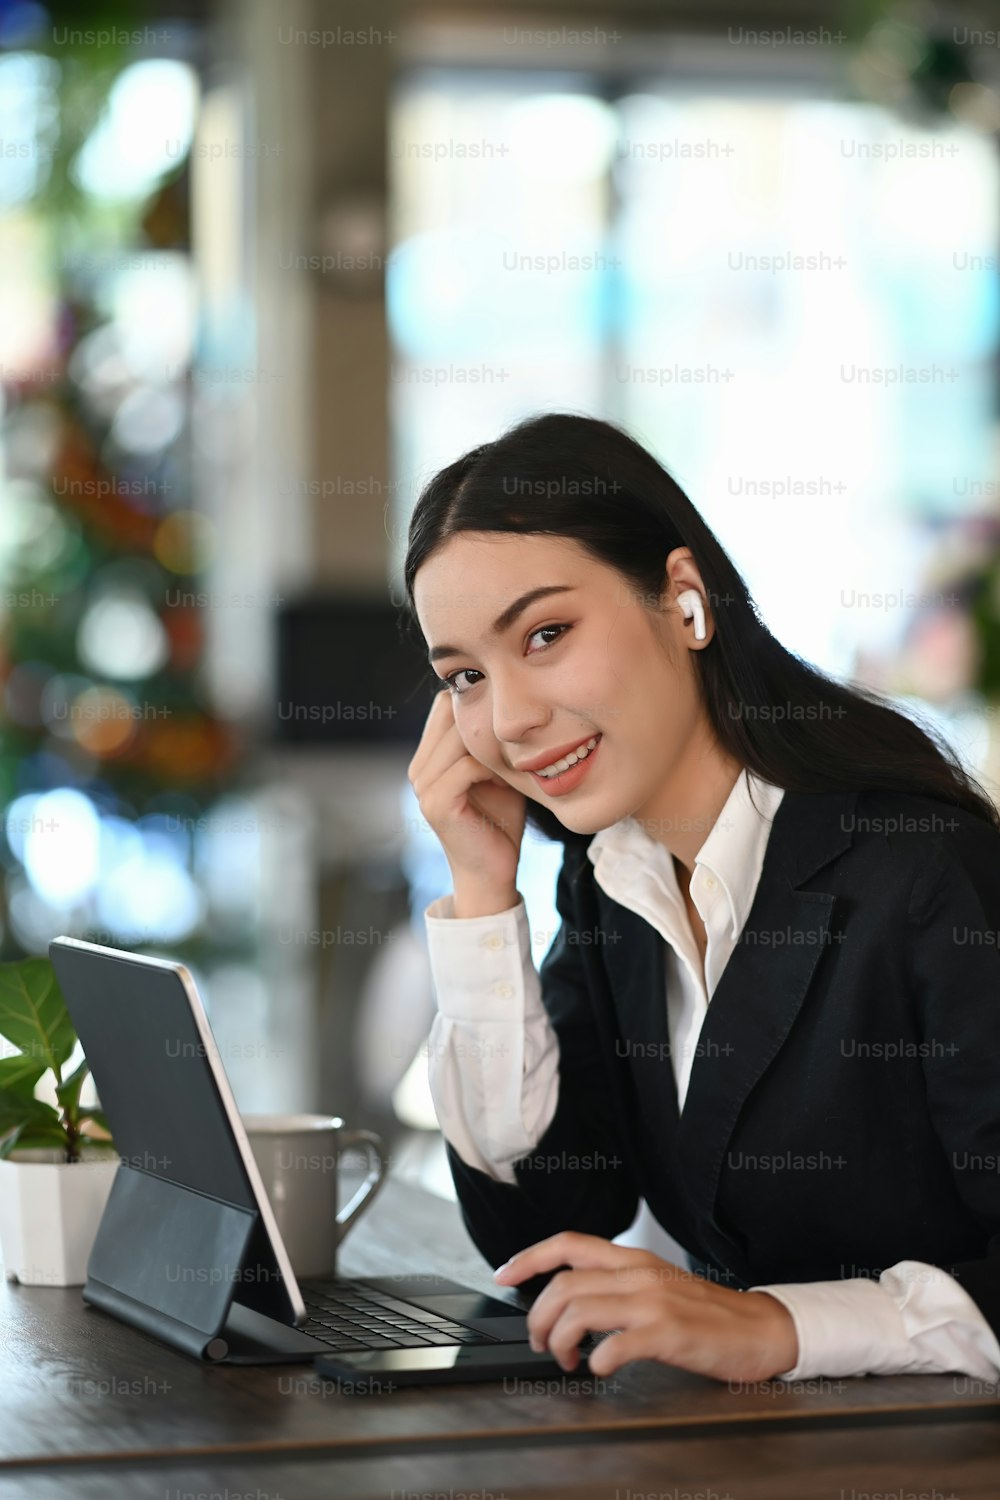 Retrato de una joven empresaria con auriculares inalámbricos sonríe a la cámara mientras trabaja en su lugar de trabajo.